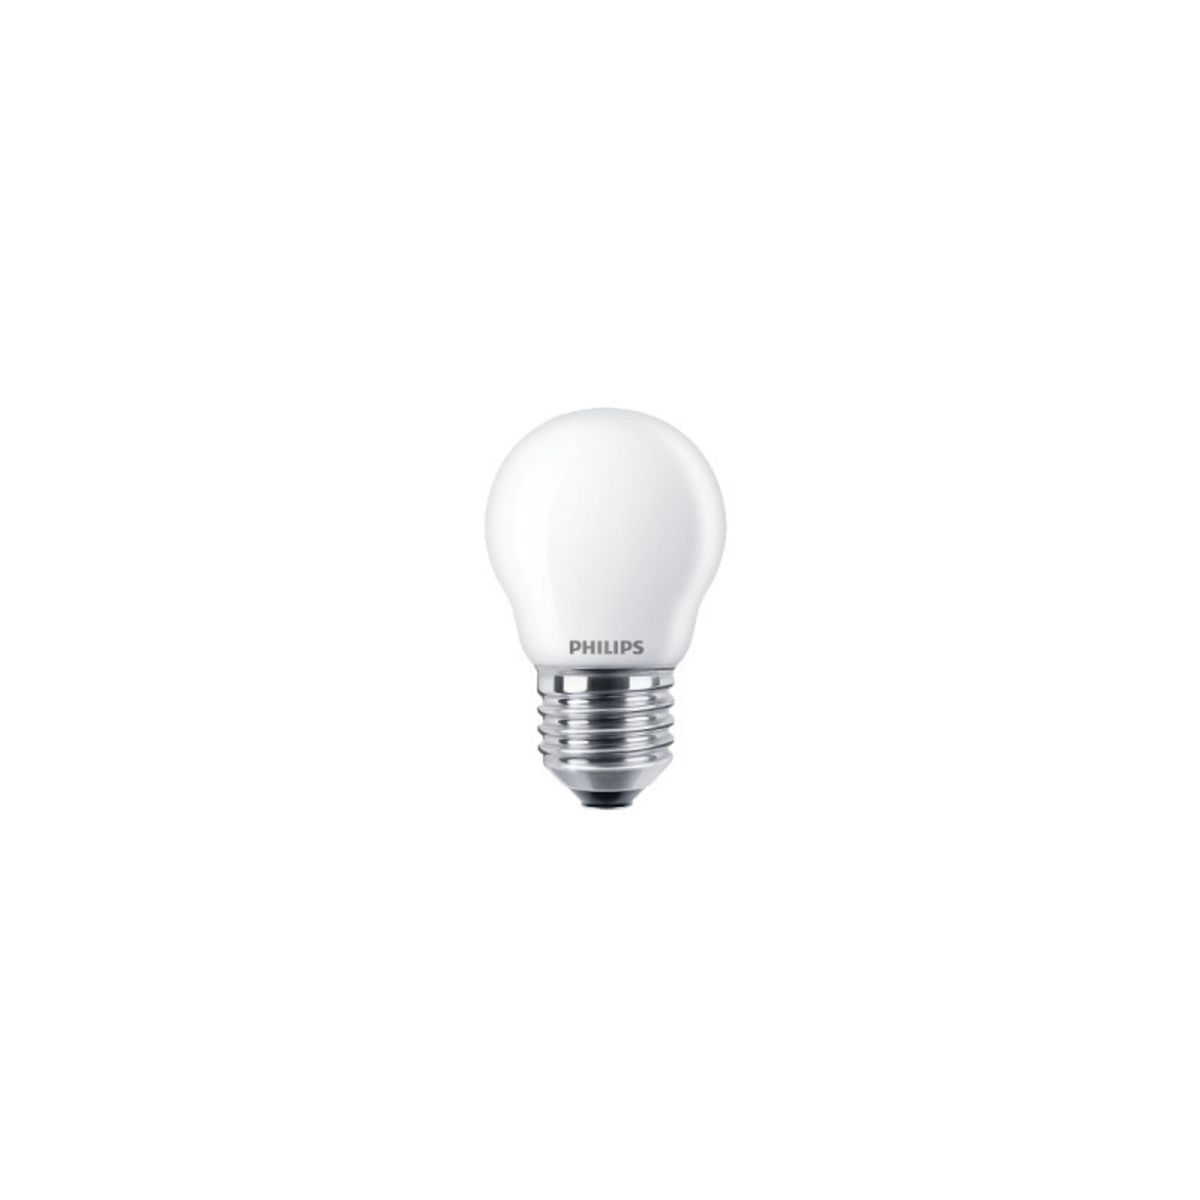 Philips Ampoule LED sphérique PHILIPS - EyeComfort - 4,3W - 470 lumens - 4000K - E27 - 93015